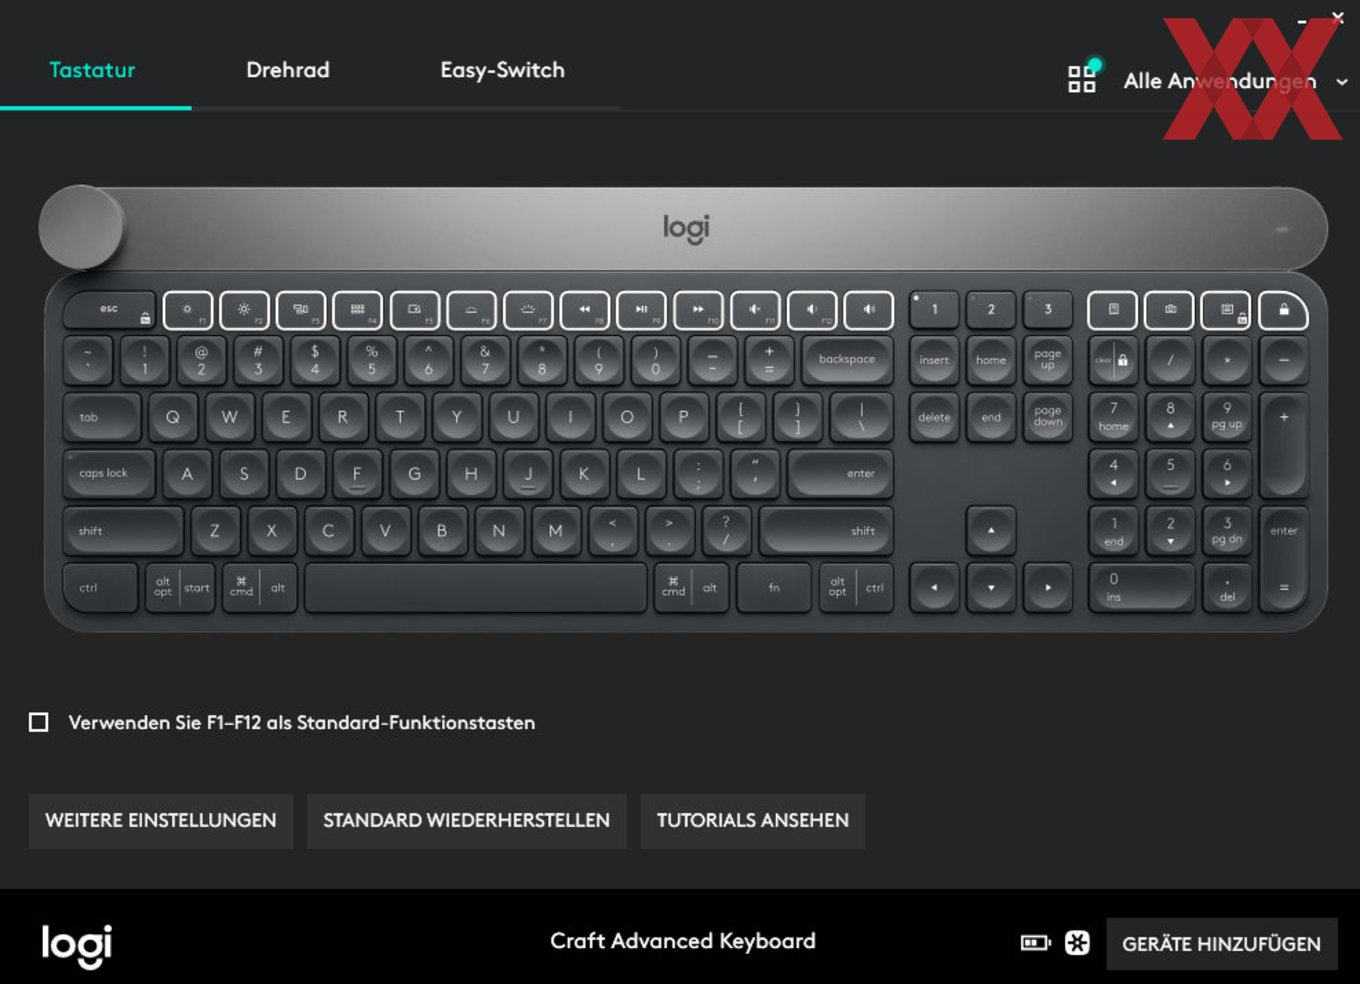 Logitech Craft Advanced keyboard Grey Bluetooth - короткий но максимально информативный обзор Для большего удобства добавлены характеристики отзывы и видео